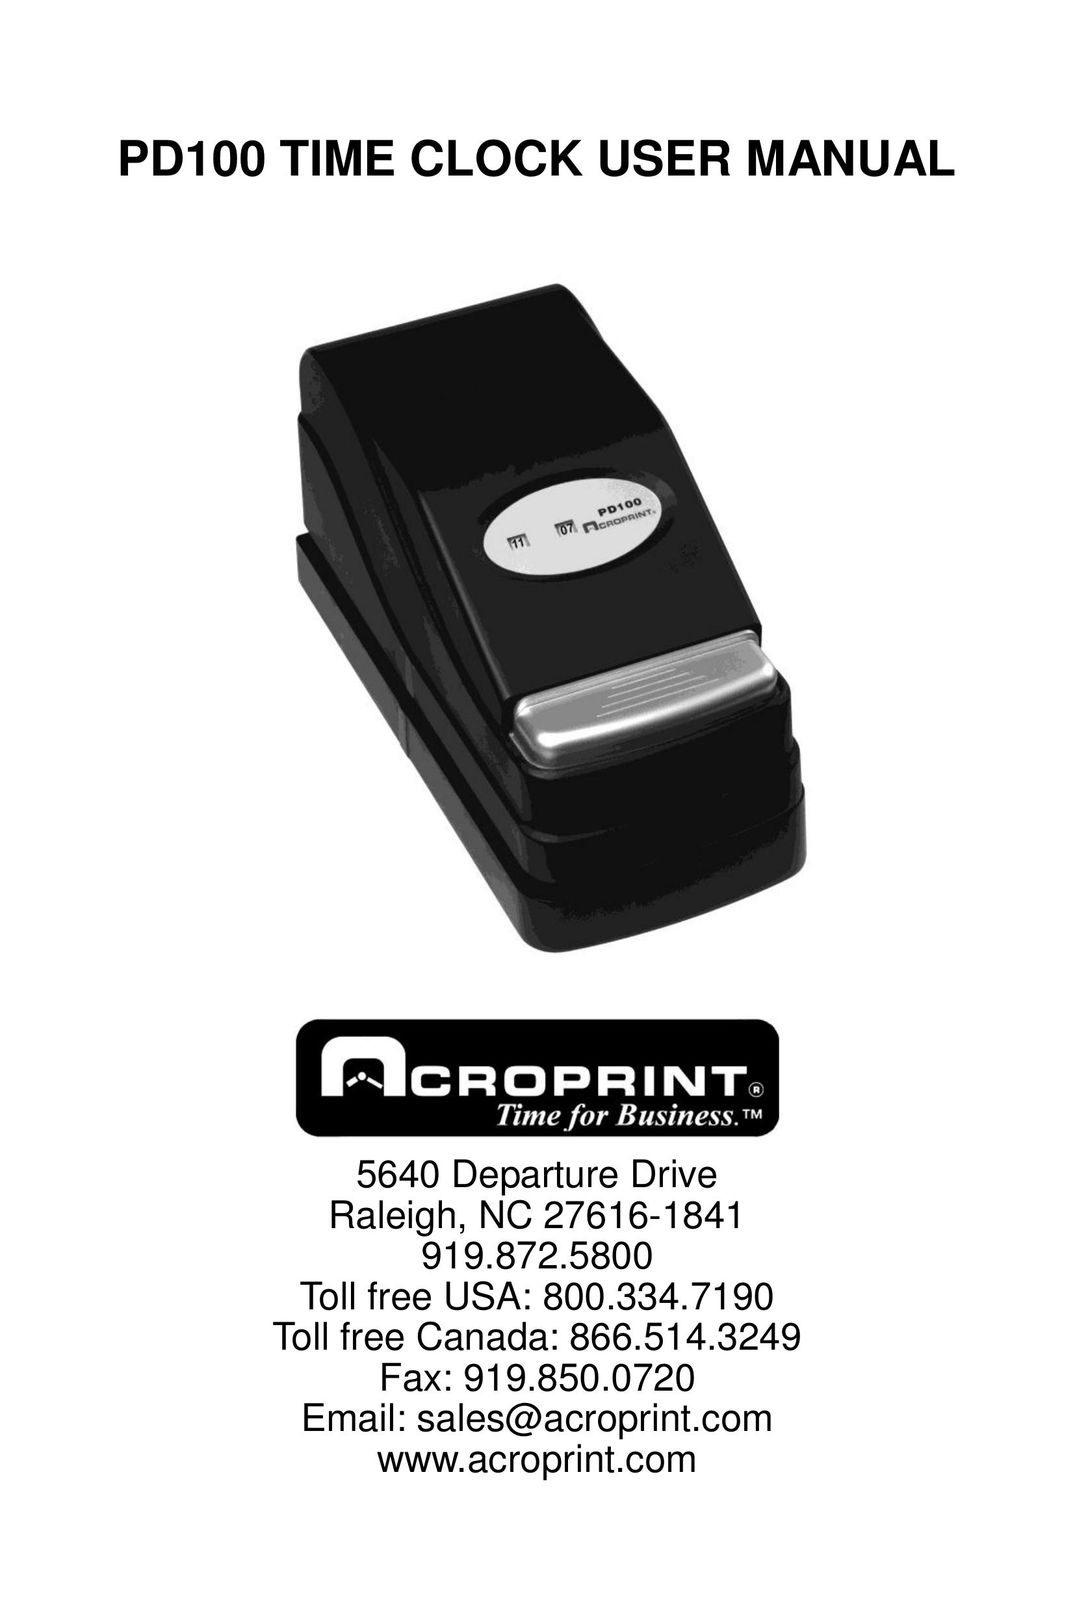 Acroprint PD100 Time Clock User Manual